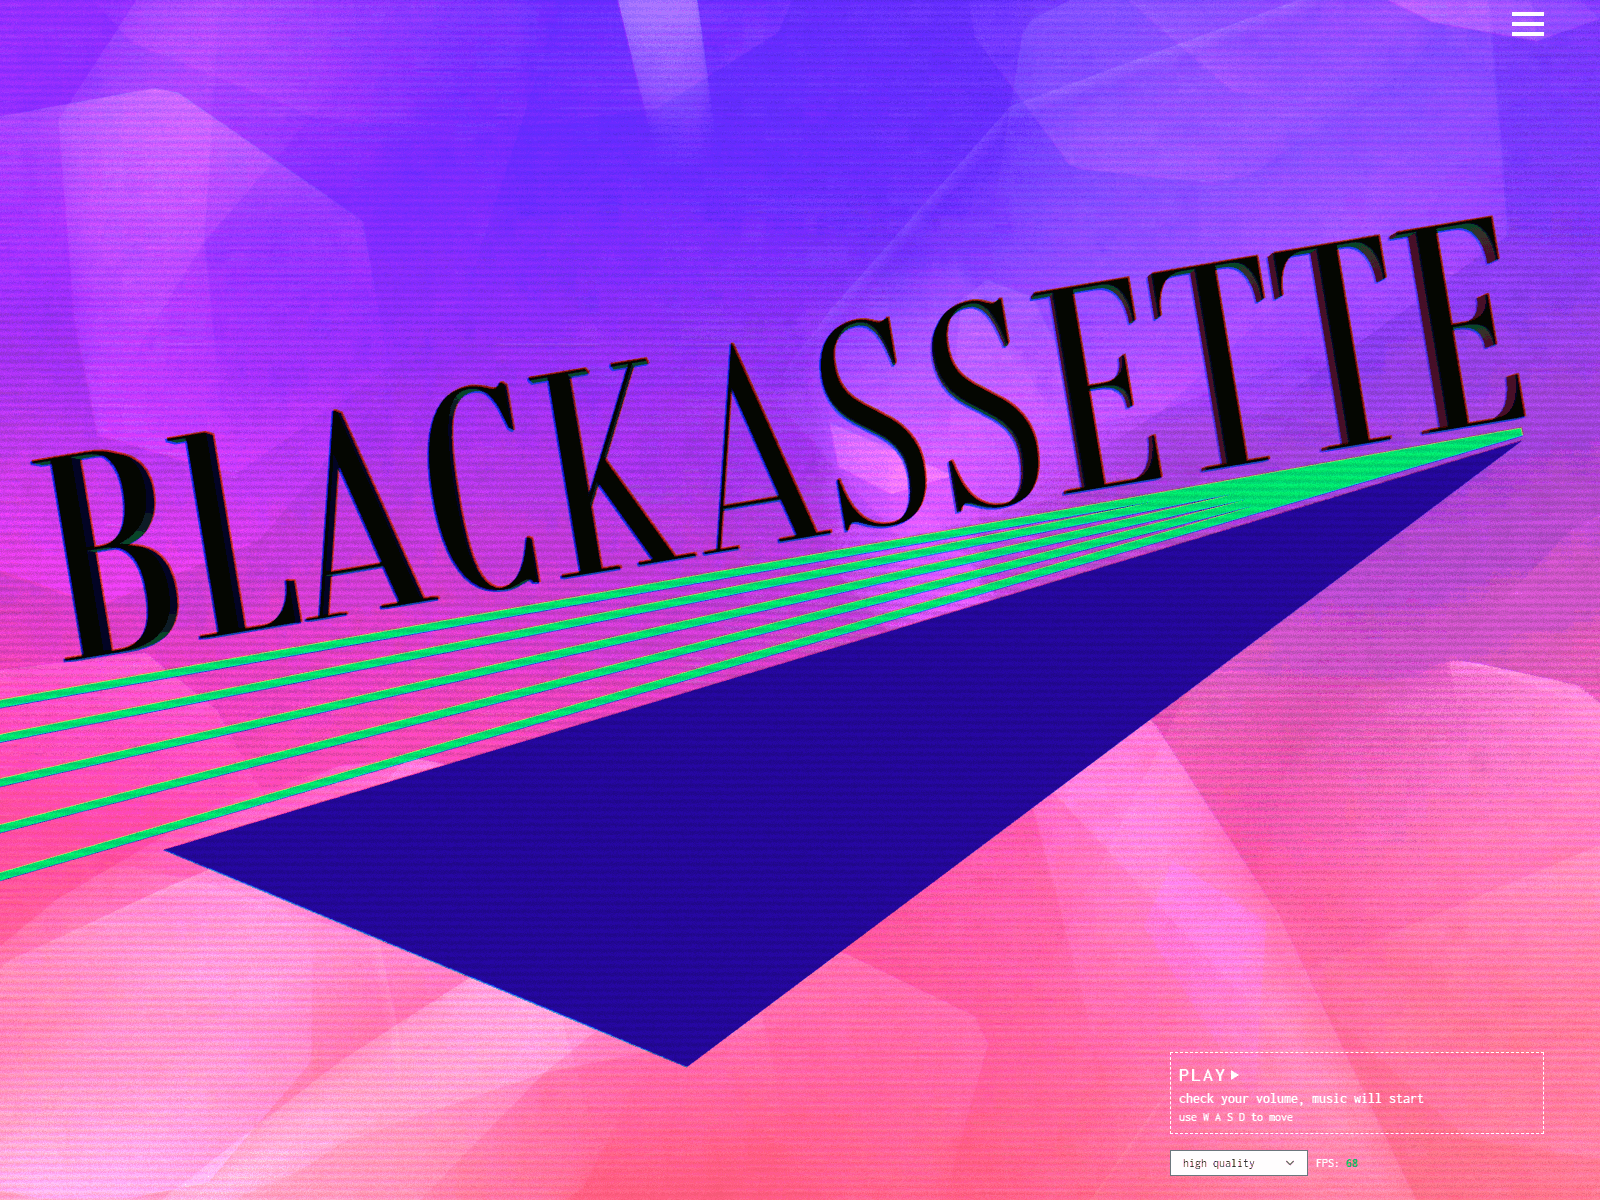 Blackassette level